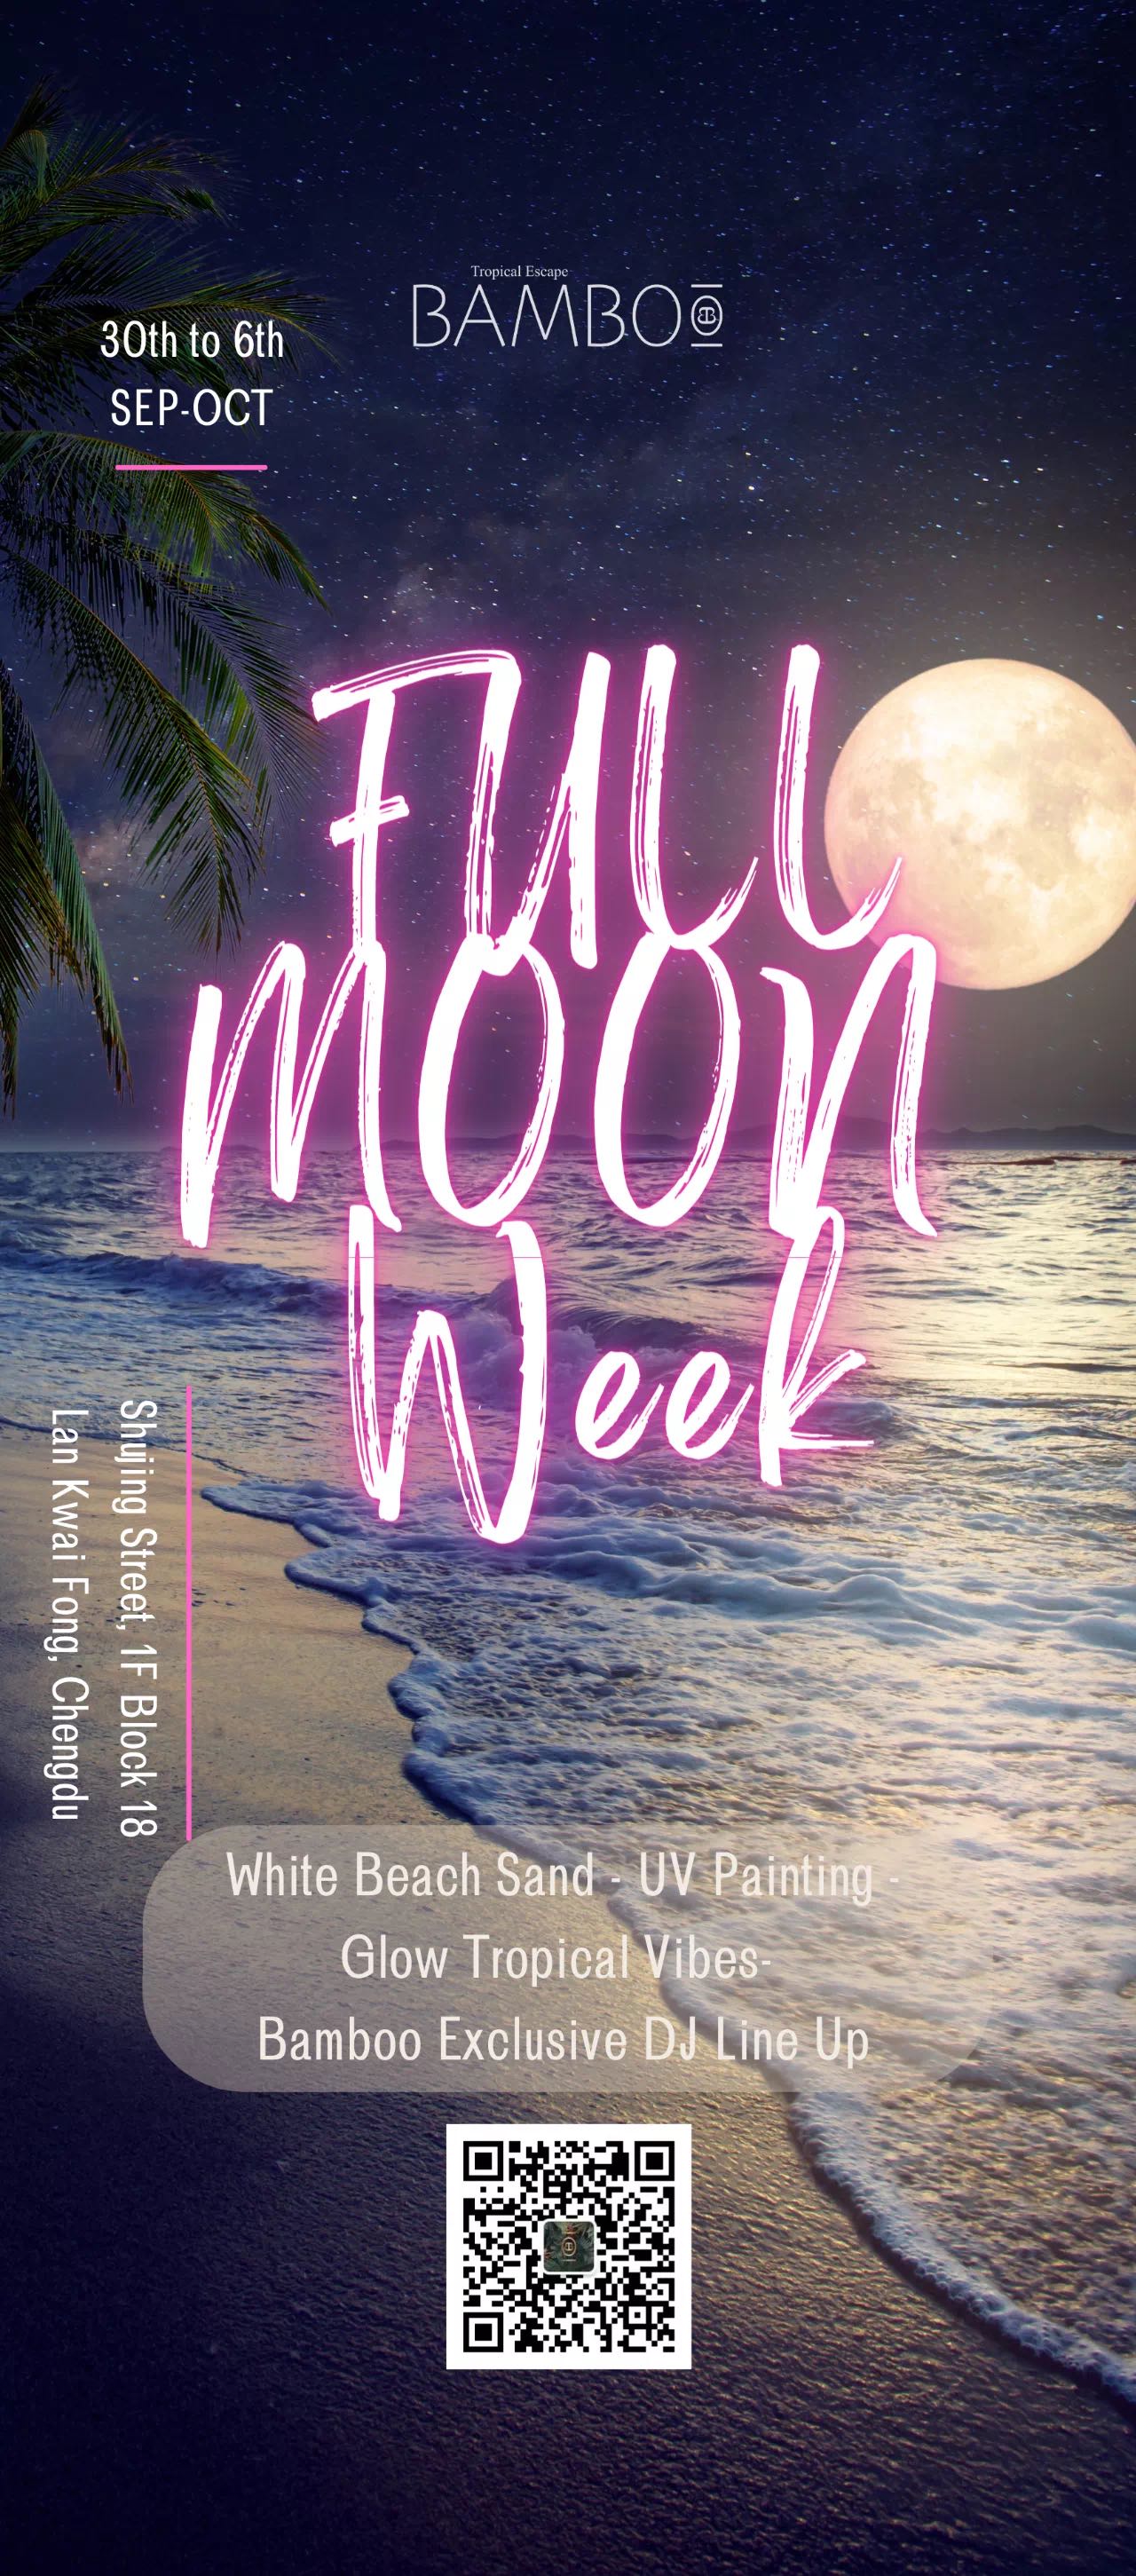 Bamboo Full Moon week chengdu expat 1